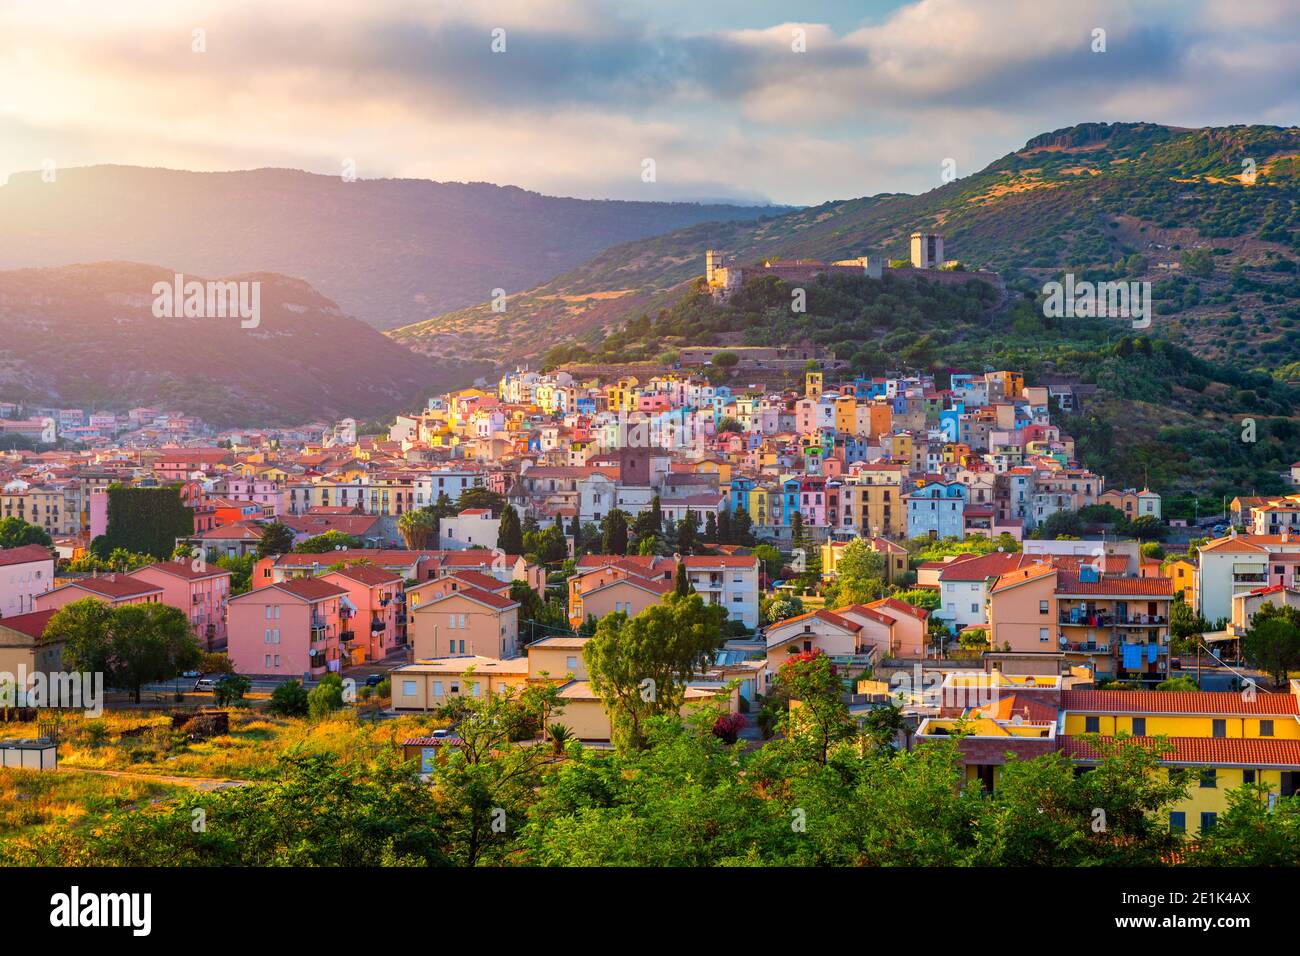 Luftaufnahme des schönen Dorfes Bosa mit farbigen Häusern und einer mittelalterlichen Burg. Bosa liegt im Norden Sardiniens, Italien. Antenne V Stockfoto